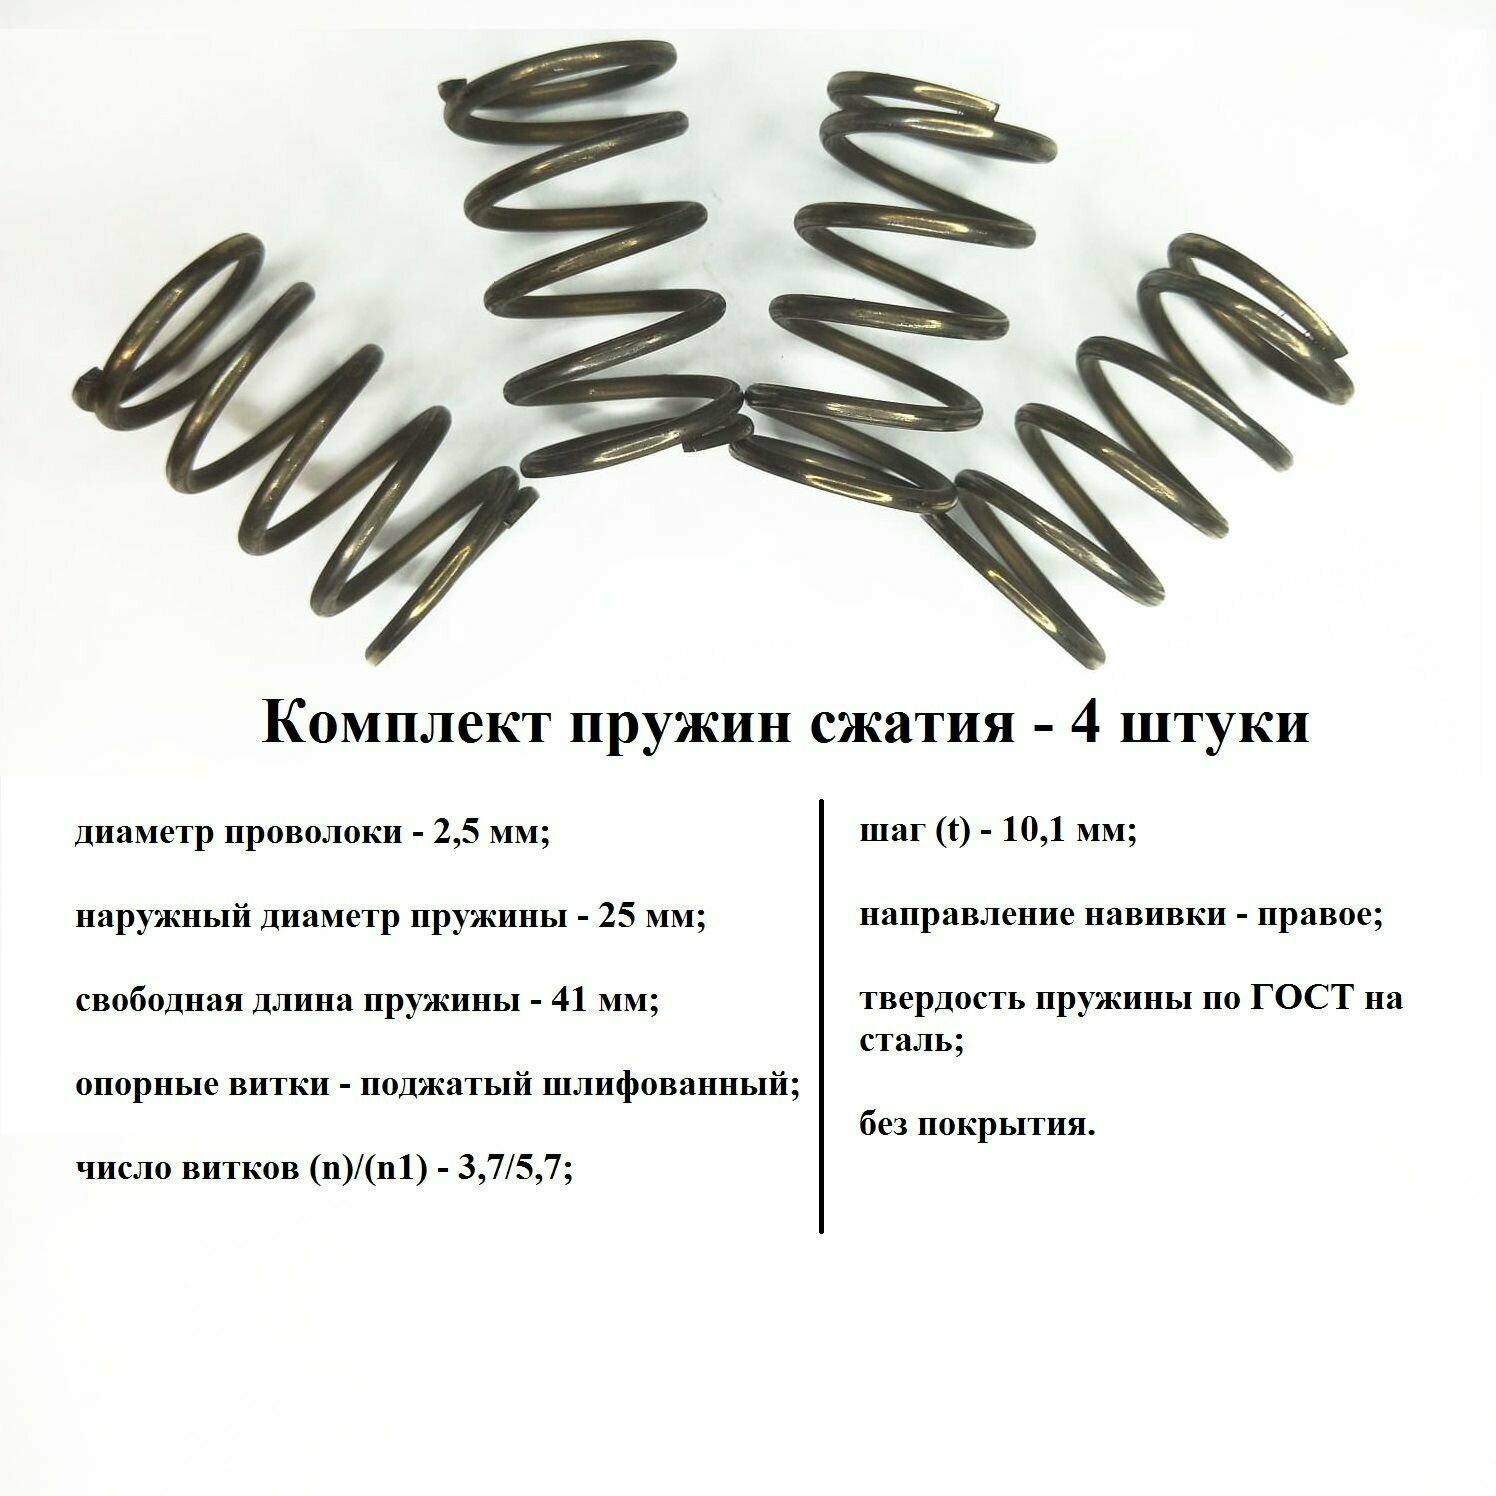 Комплект пружины сжатия D-25мм d-2.5мм L-41мм t - 101 мм (4 штуки)